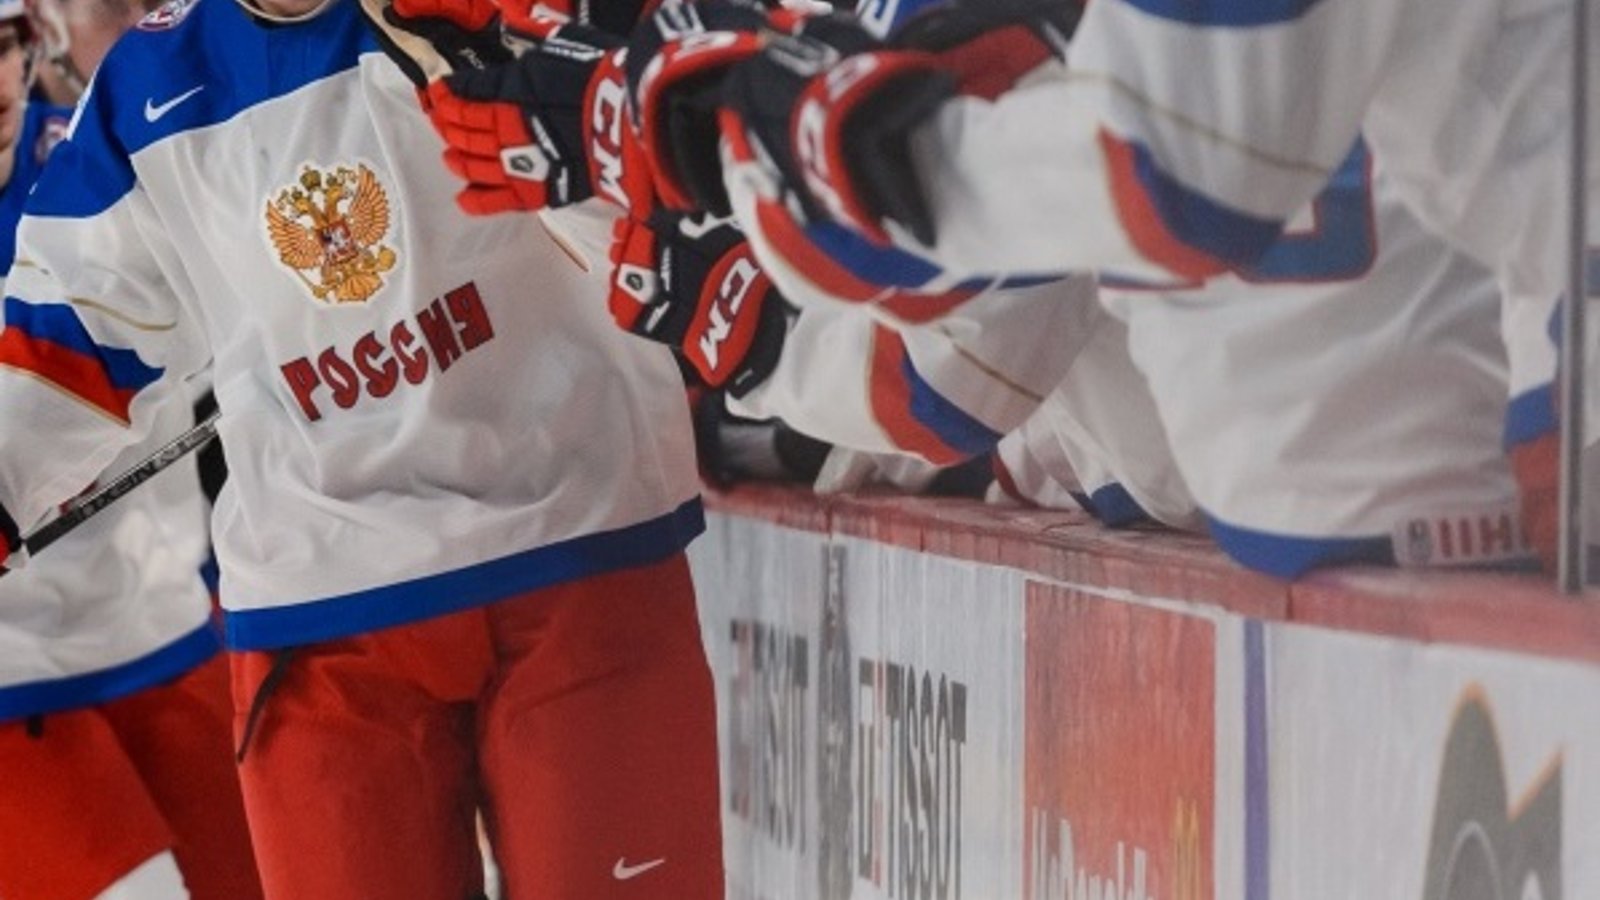 La IIHF annonce de nouvelles sanctions importantes contre la Russie